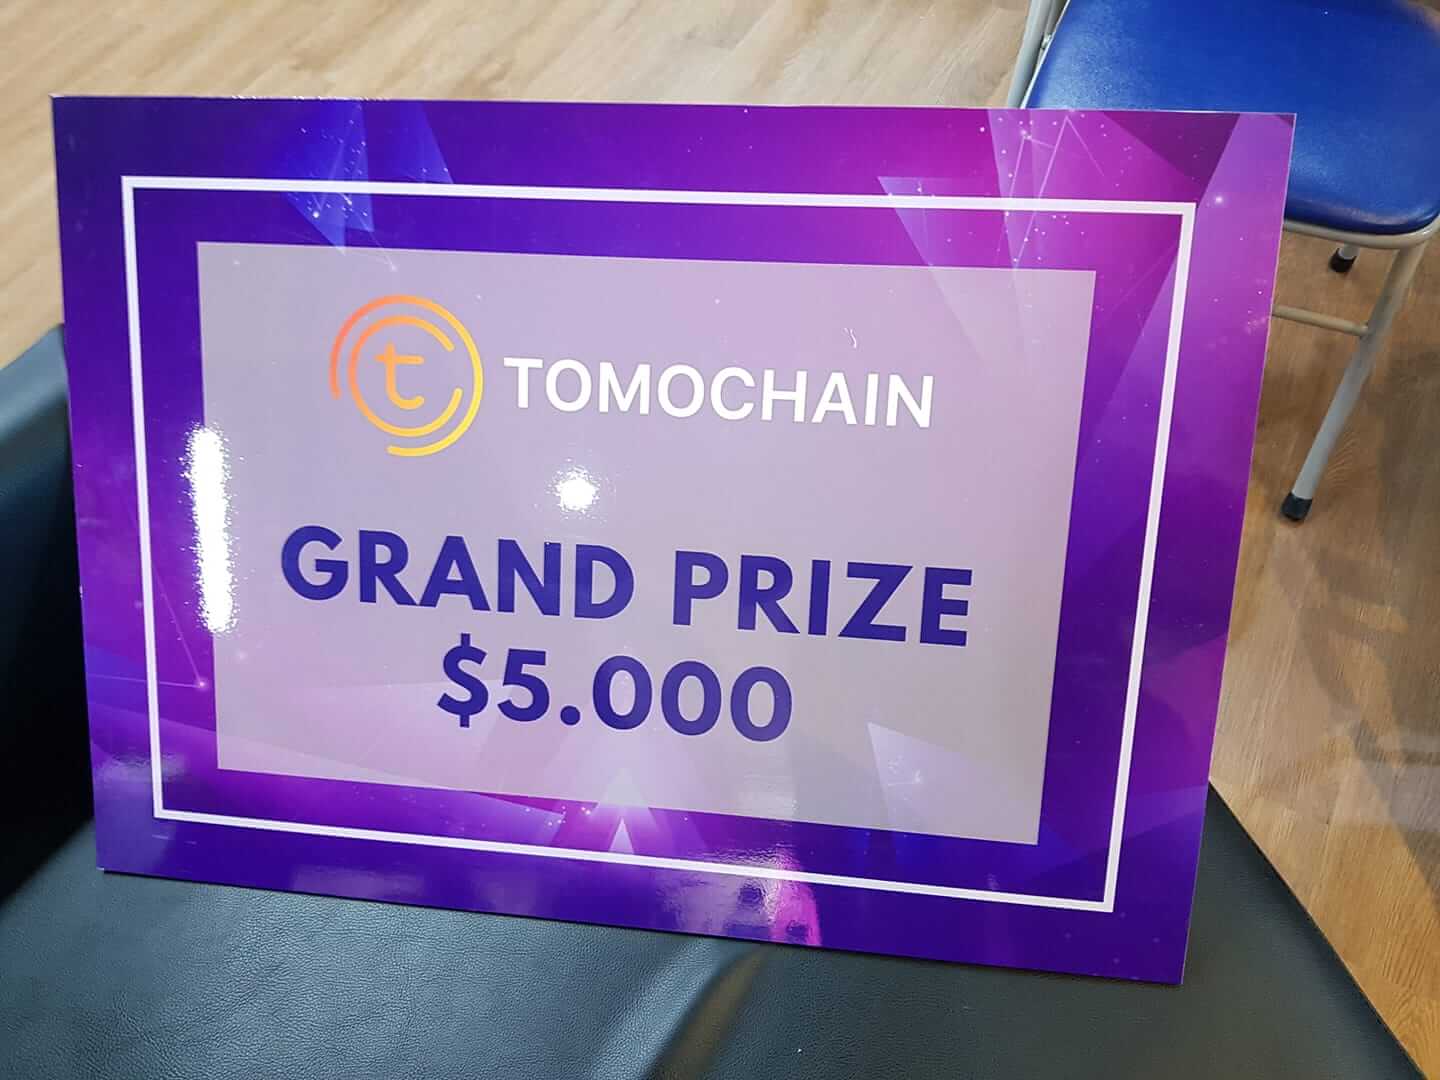 Grand prize